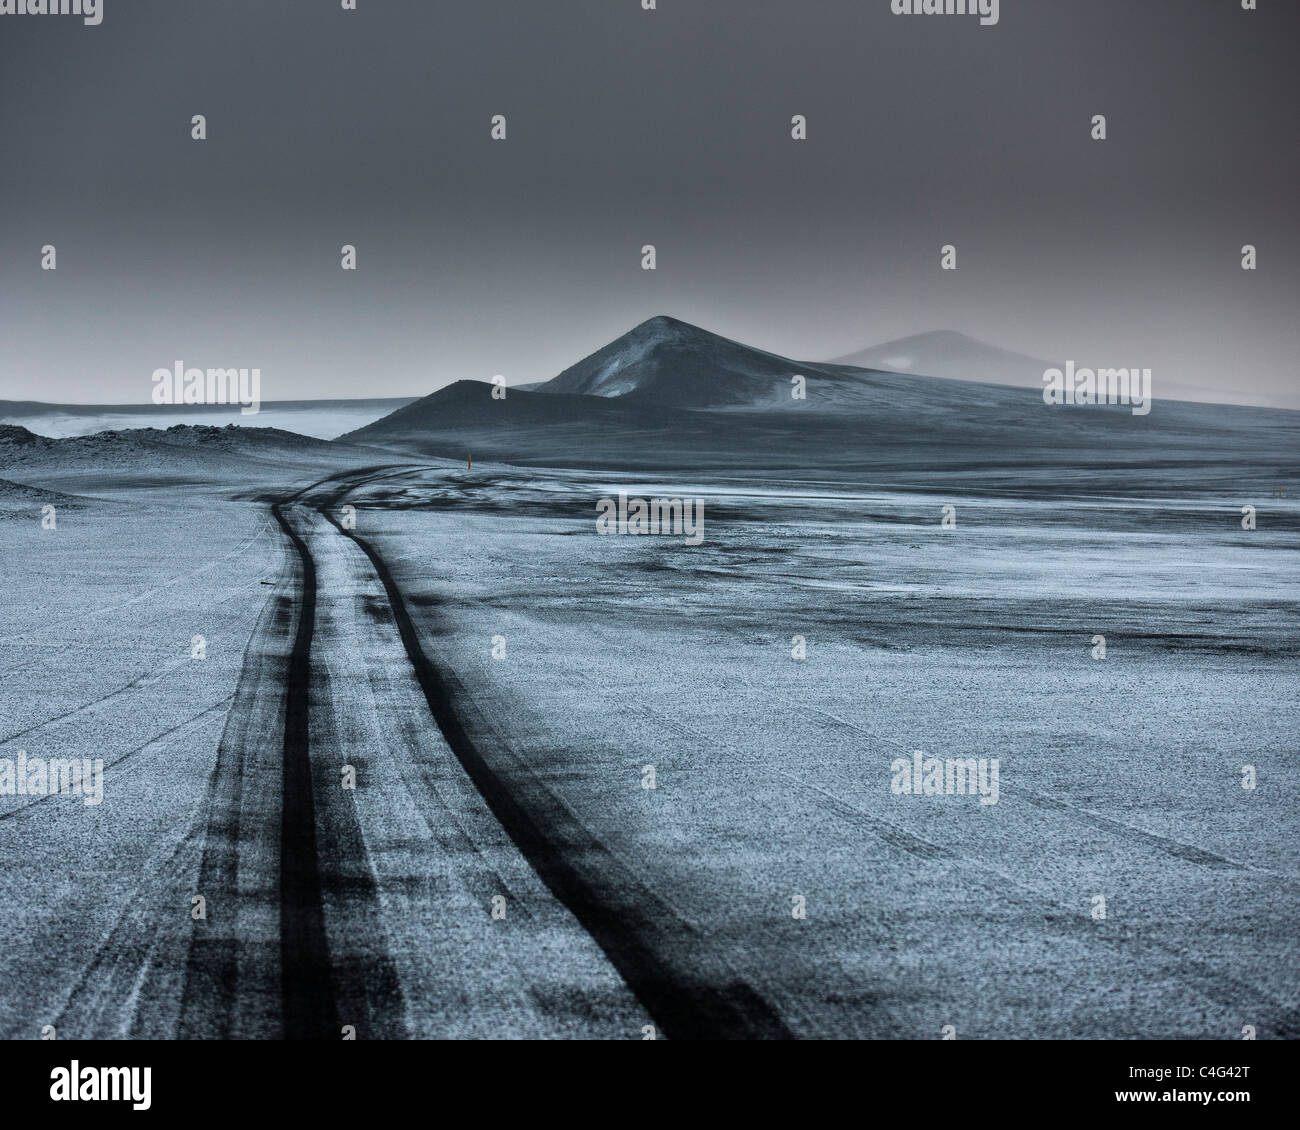 Luce neve sulle ceneri del paesaggio riempito wth tracce jeep fuoristrada. Highlands Centrali, Islanda Foto Stock